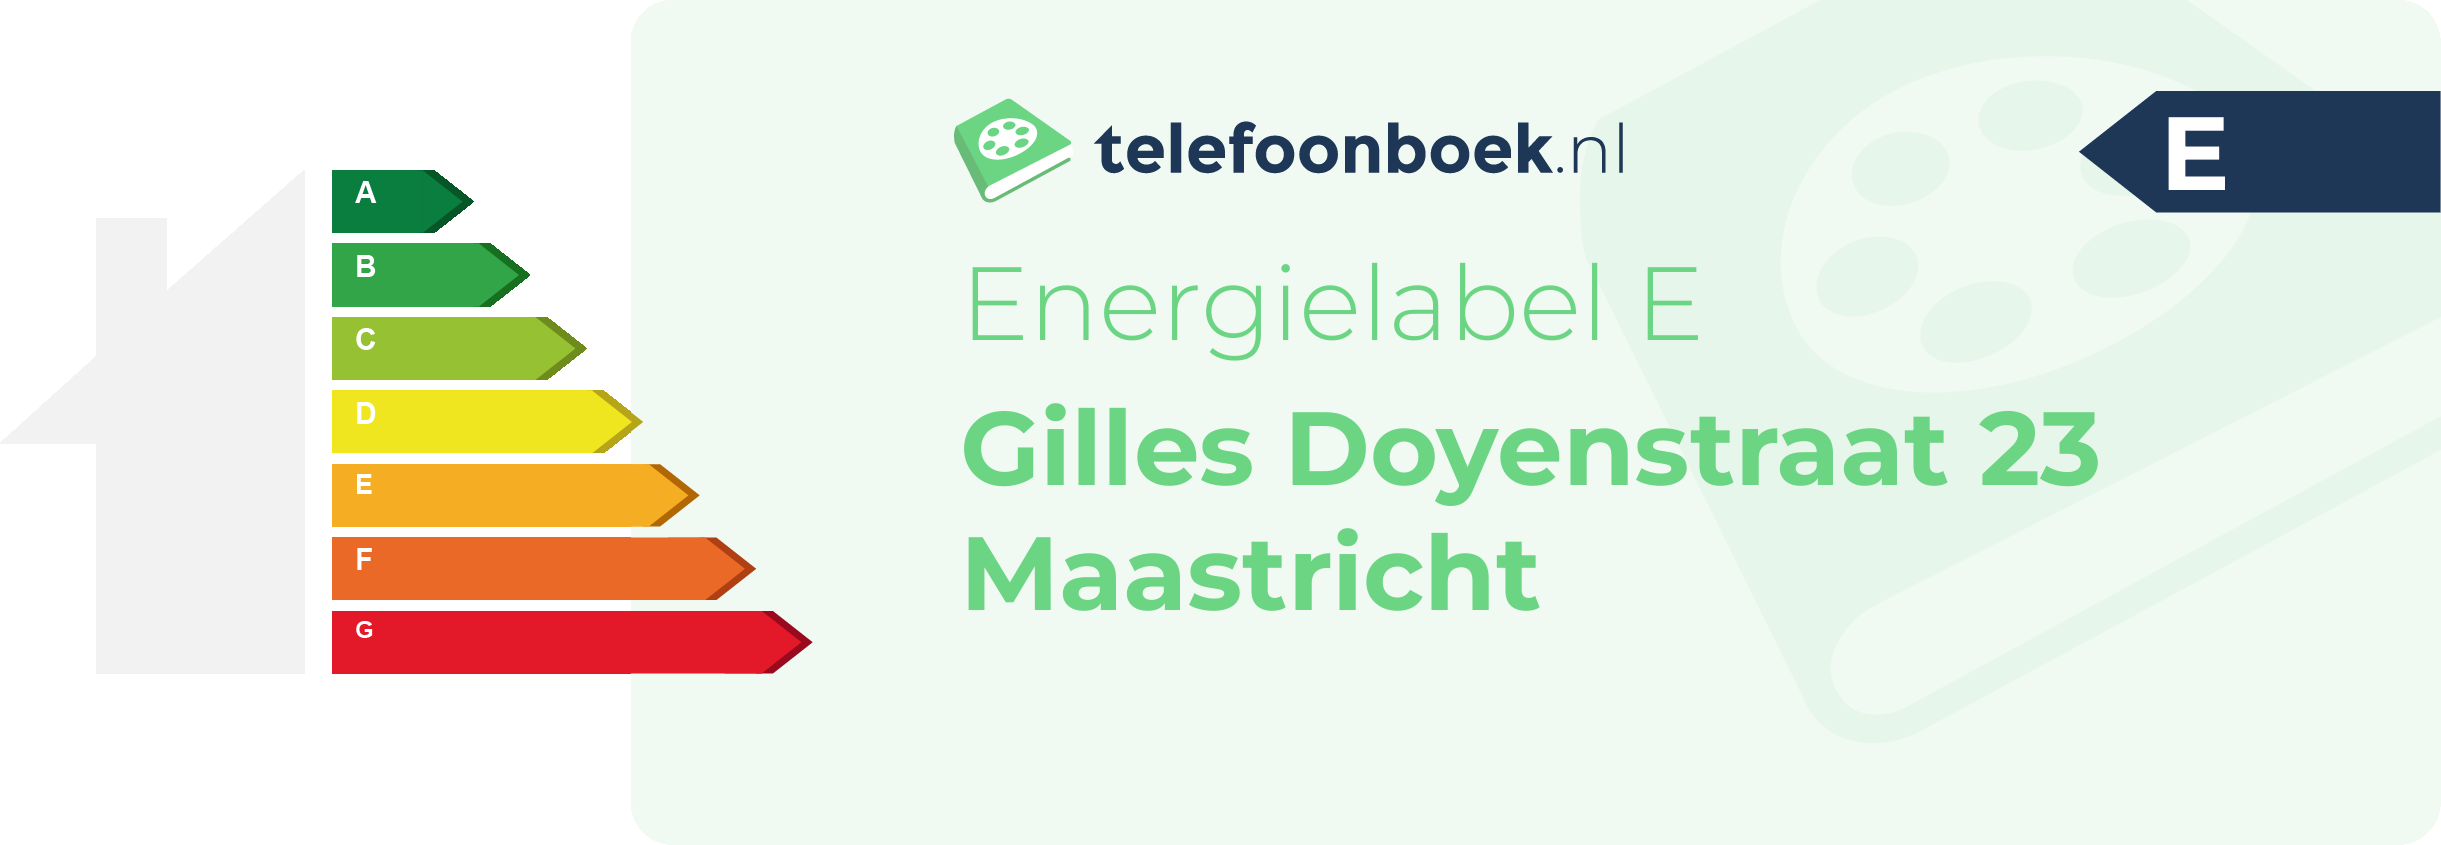 Energielabel Gilles Doyenstraat 23 Maastricht